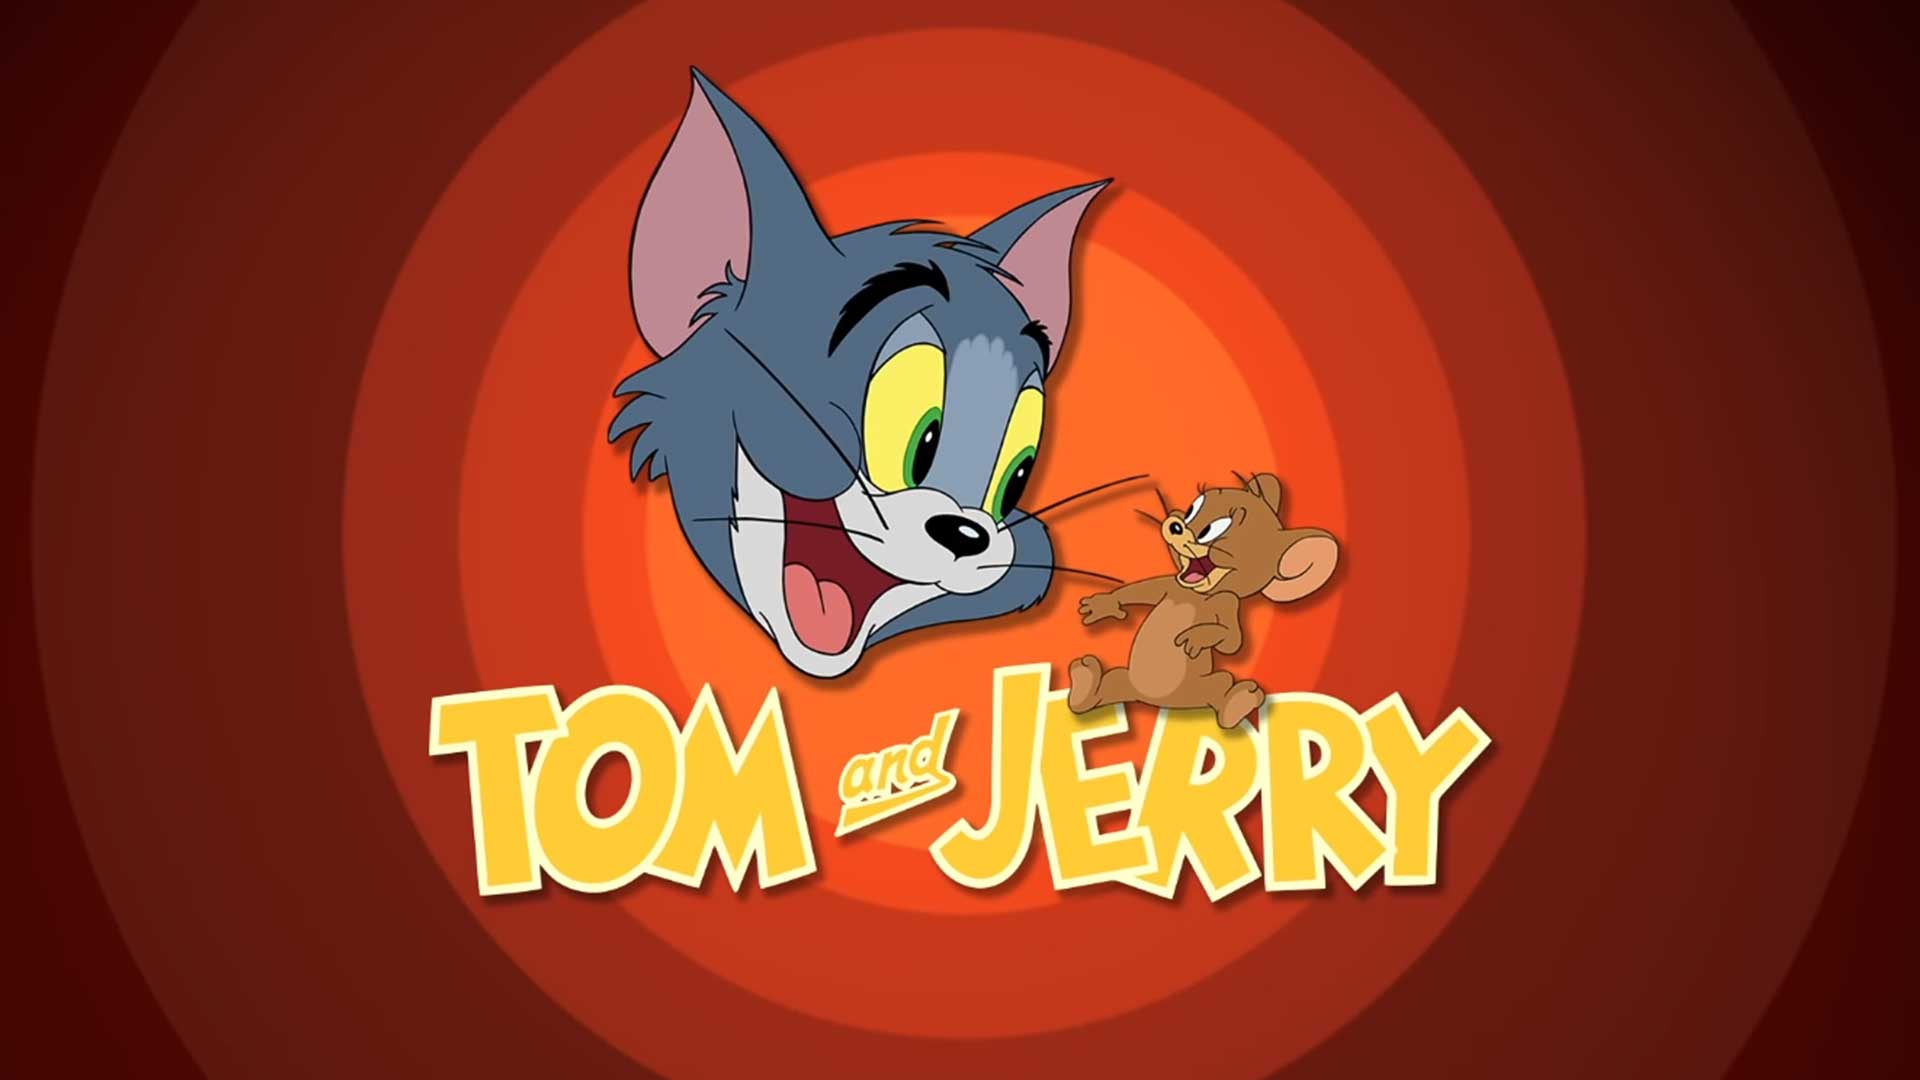 Том и Джерри – 2 серия «Полуночная трапеза» / Tom and Jerry